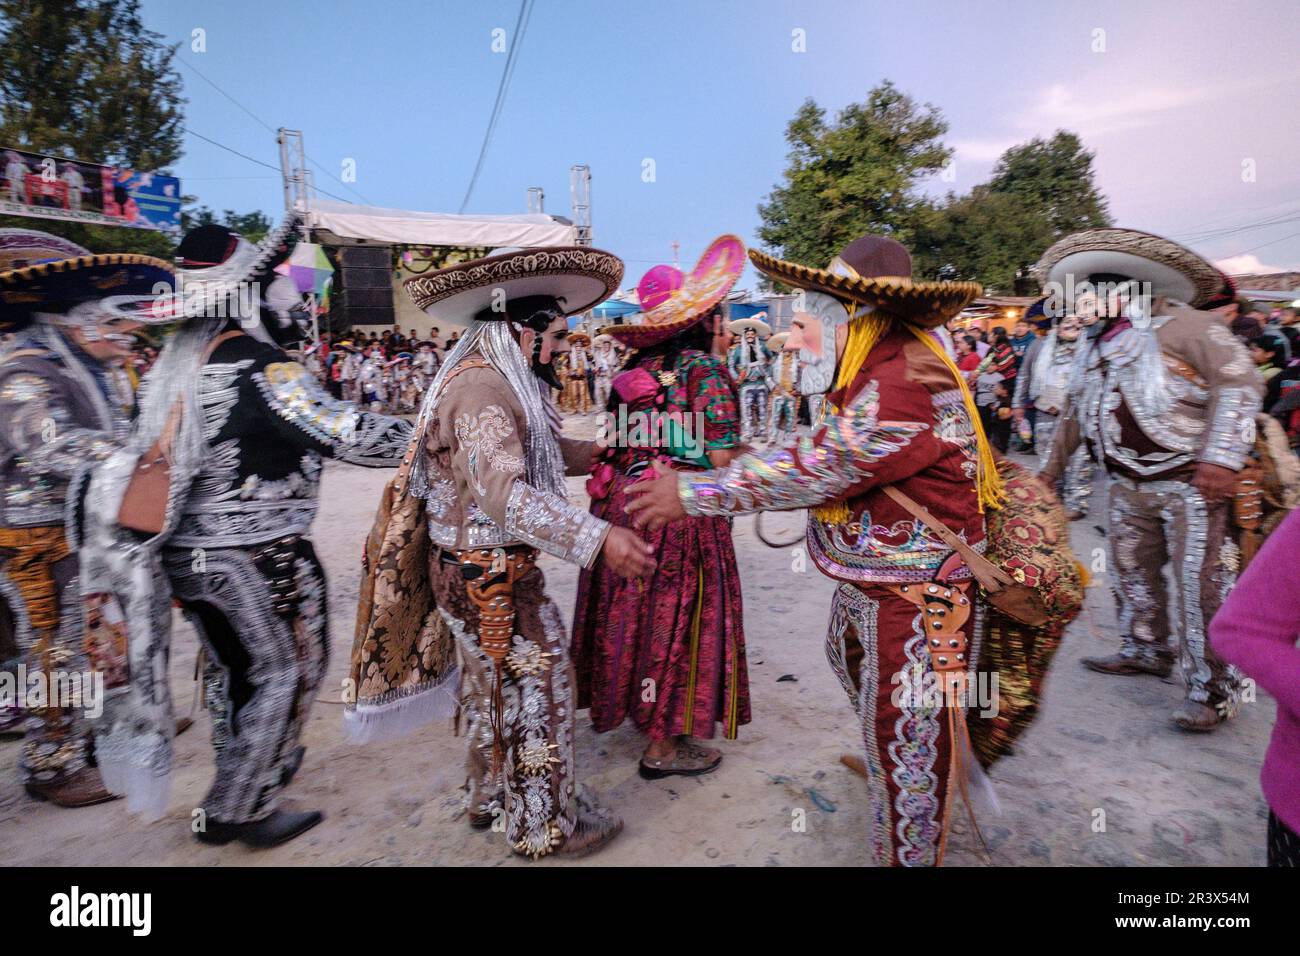 Danza de los Mexicanos, Santo Tomás Chichicastenango, República de Guatemala, América Central. Stockfoto